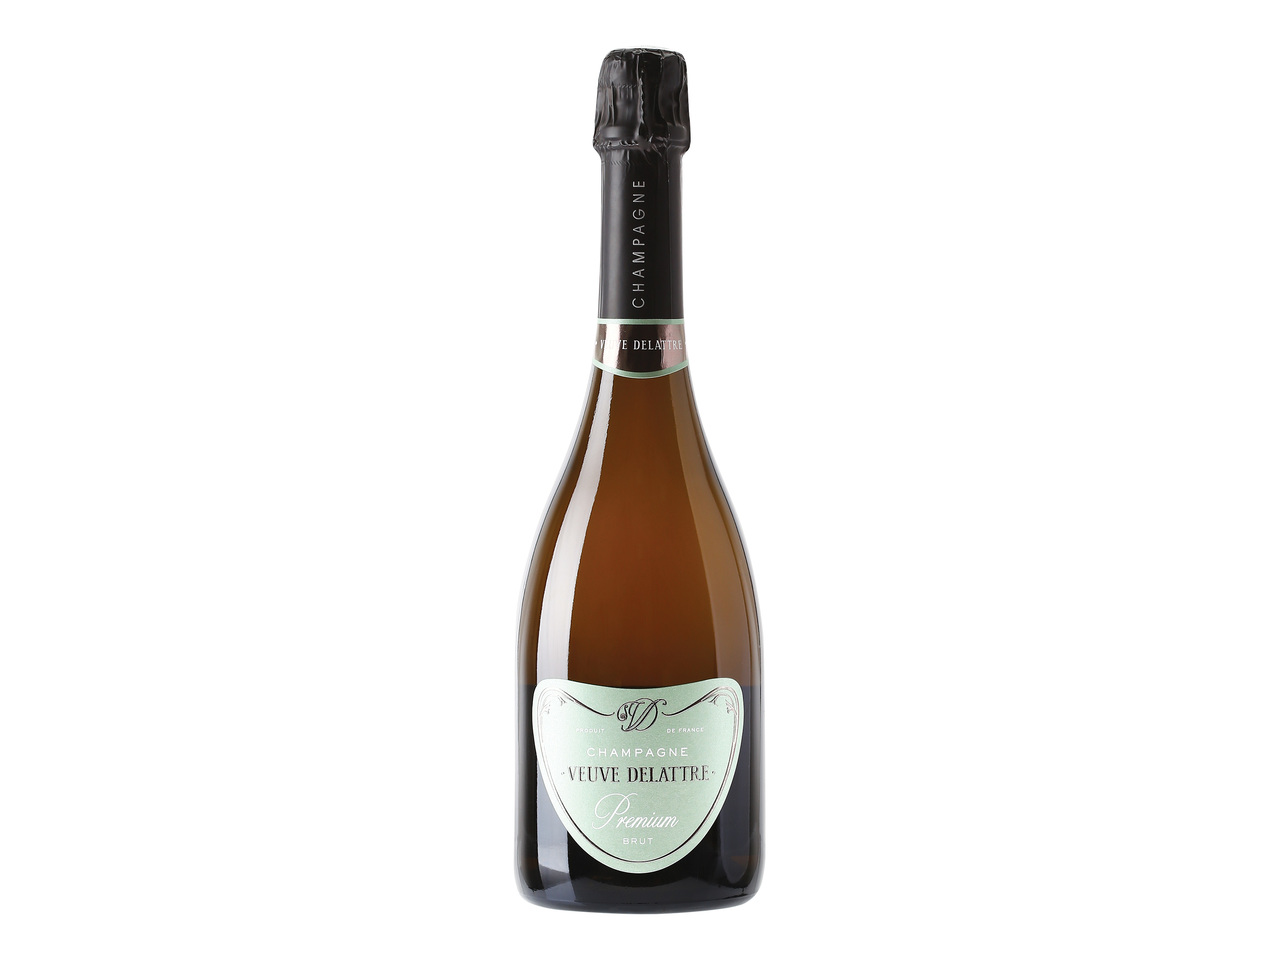 Champagne Veuve Delattre Premium1